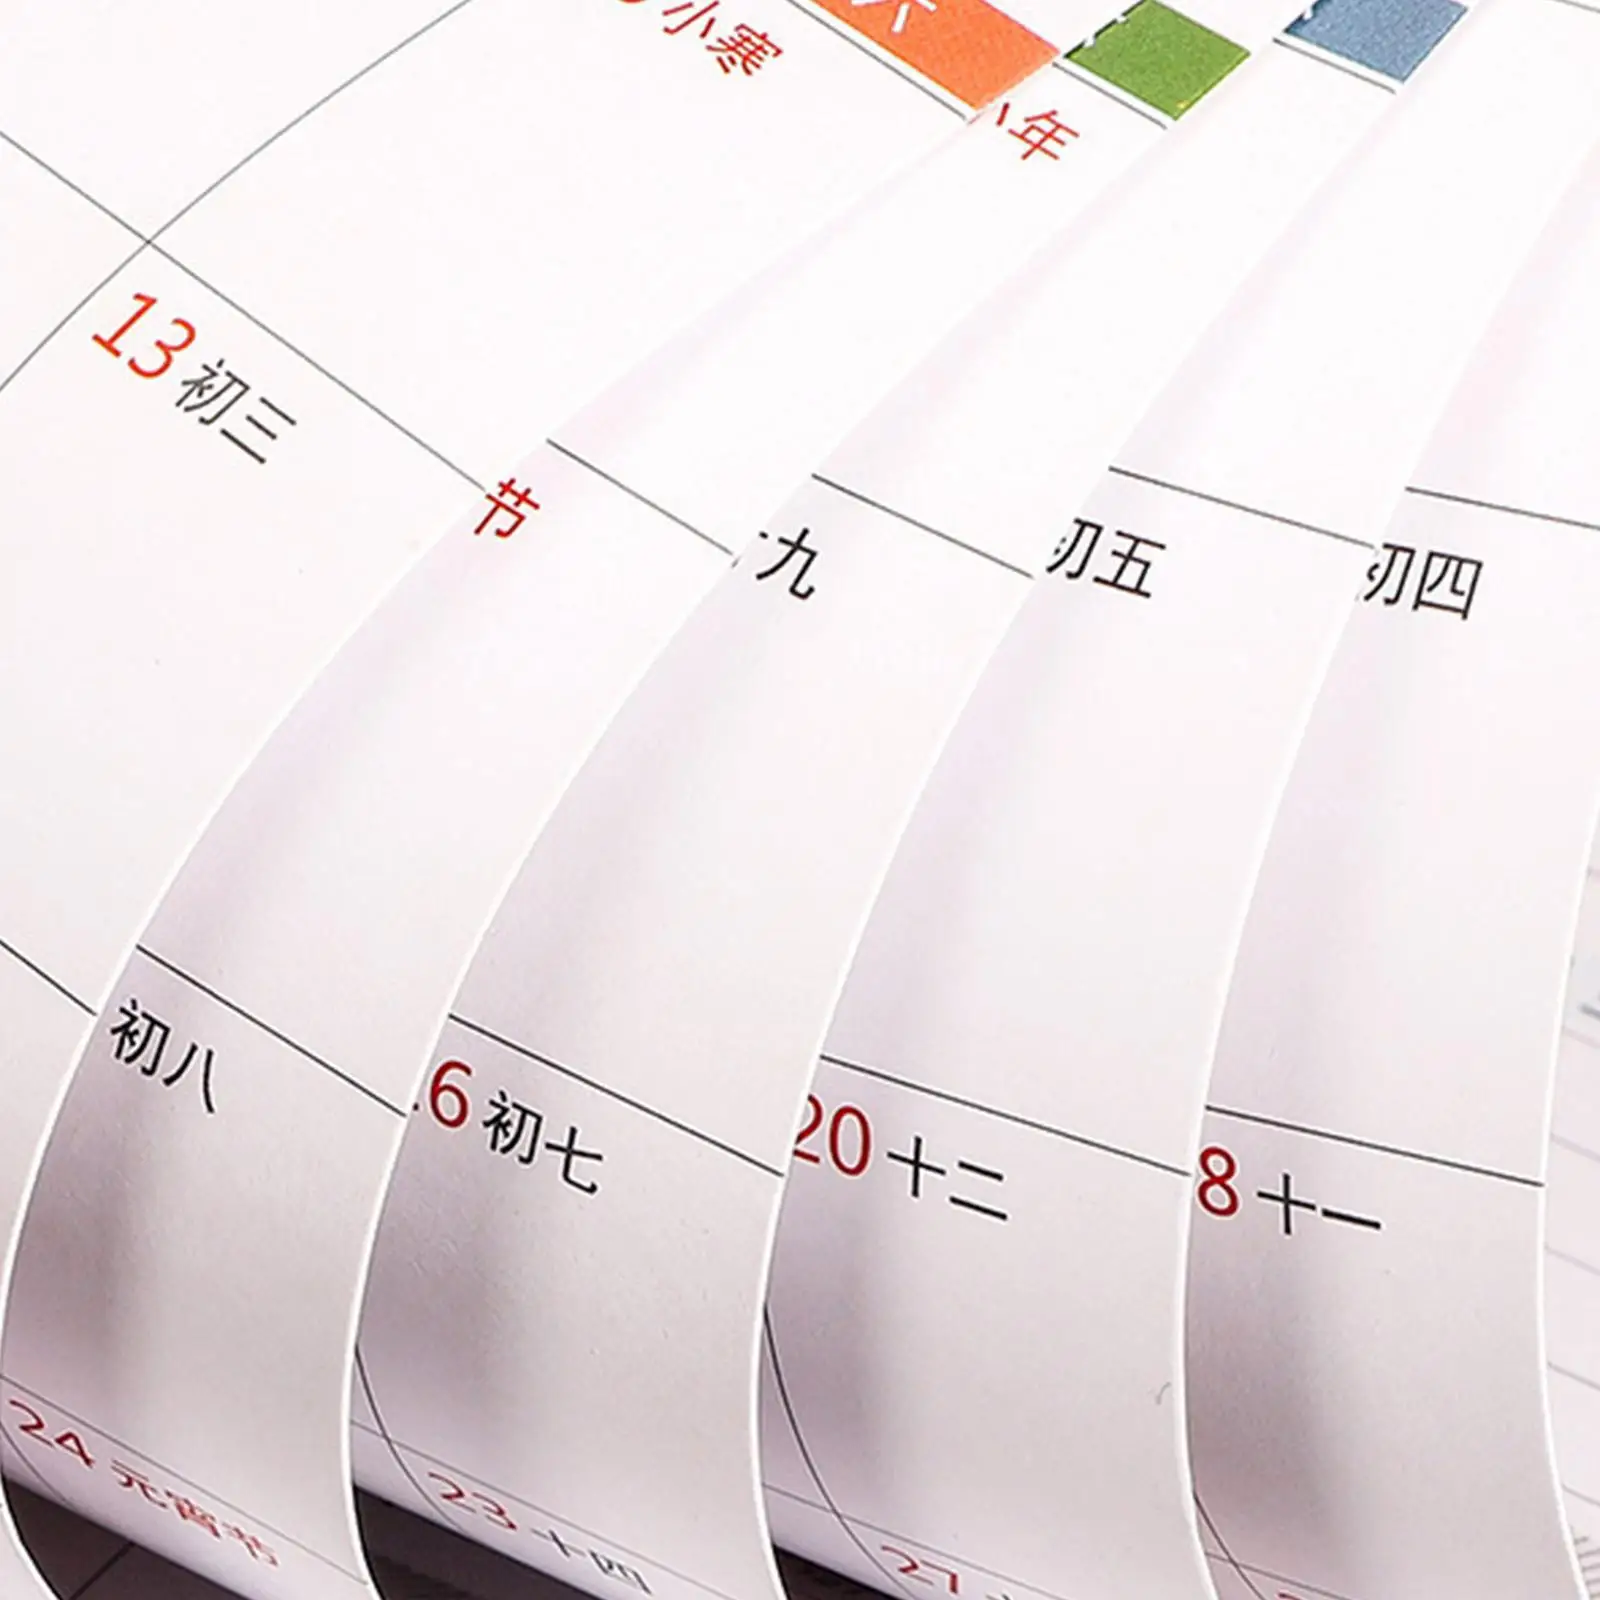 2024 Desk Calendar with Pen Holder Phone Holder 12 Monthly Reminder Desk Calendar Wooden Perpetual Calendar for Home Desk Office